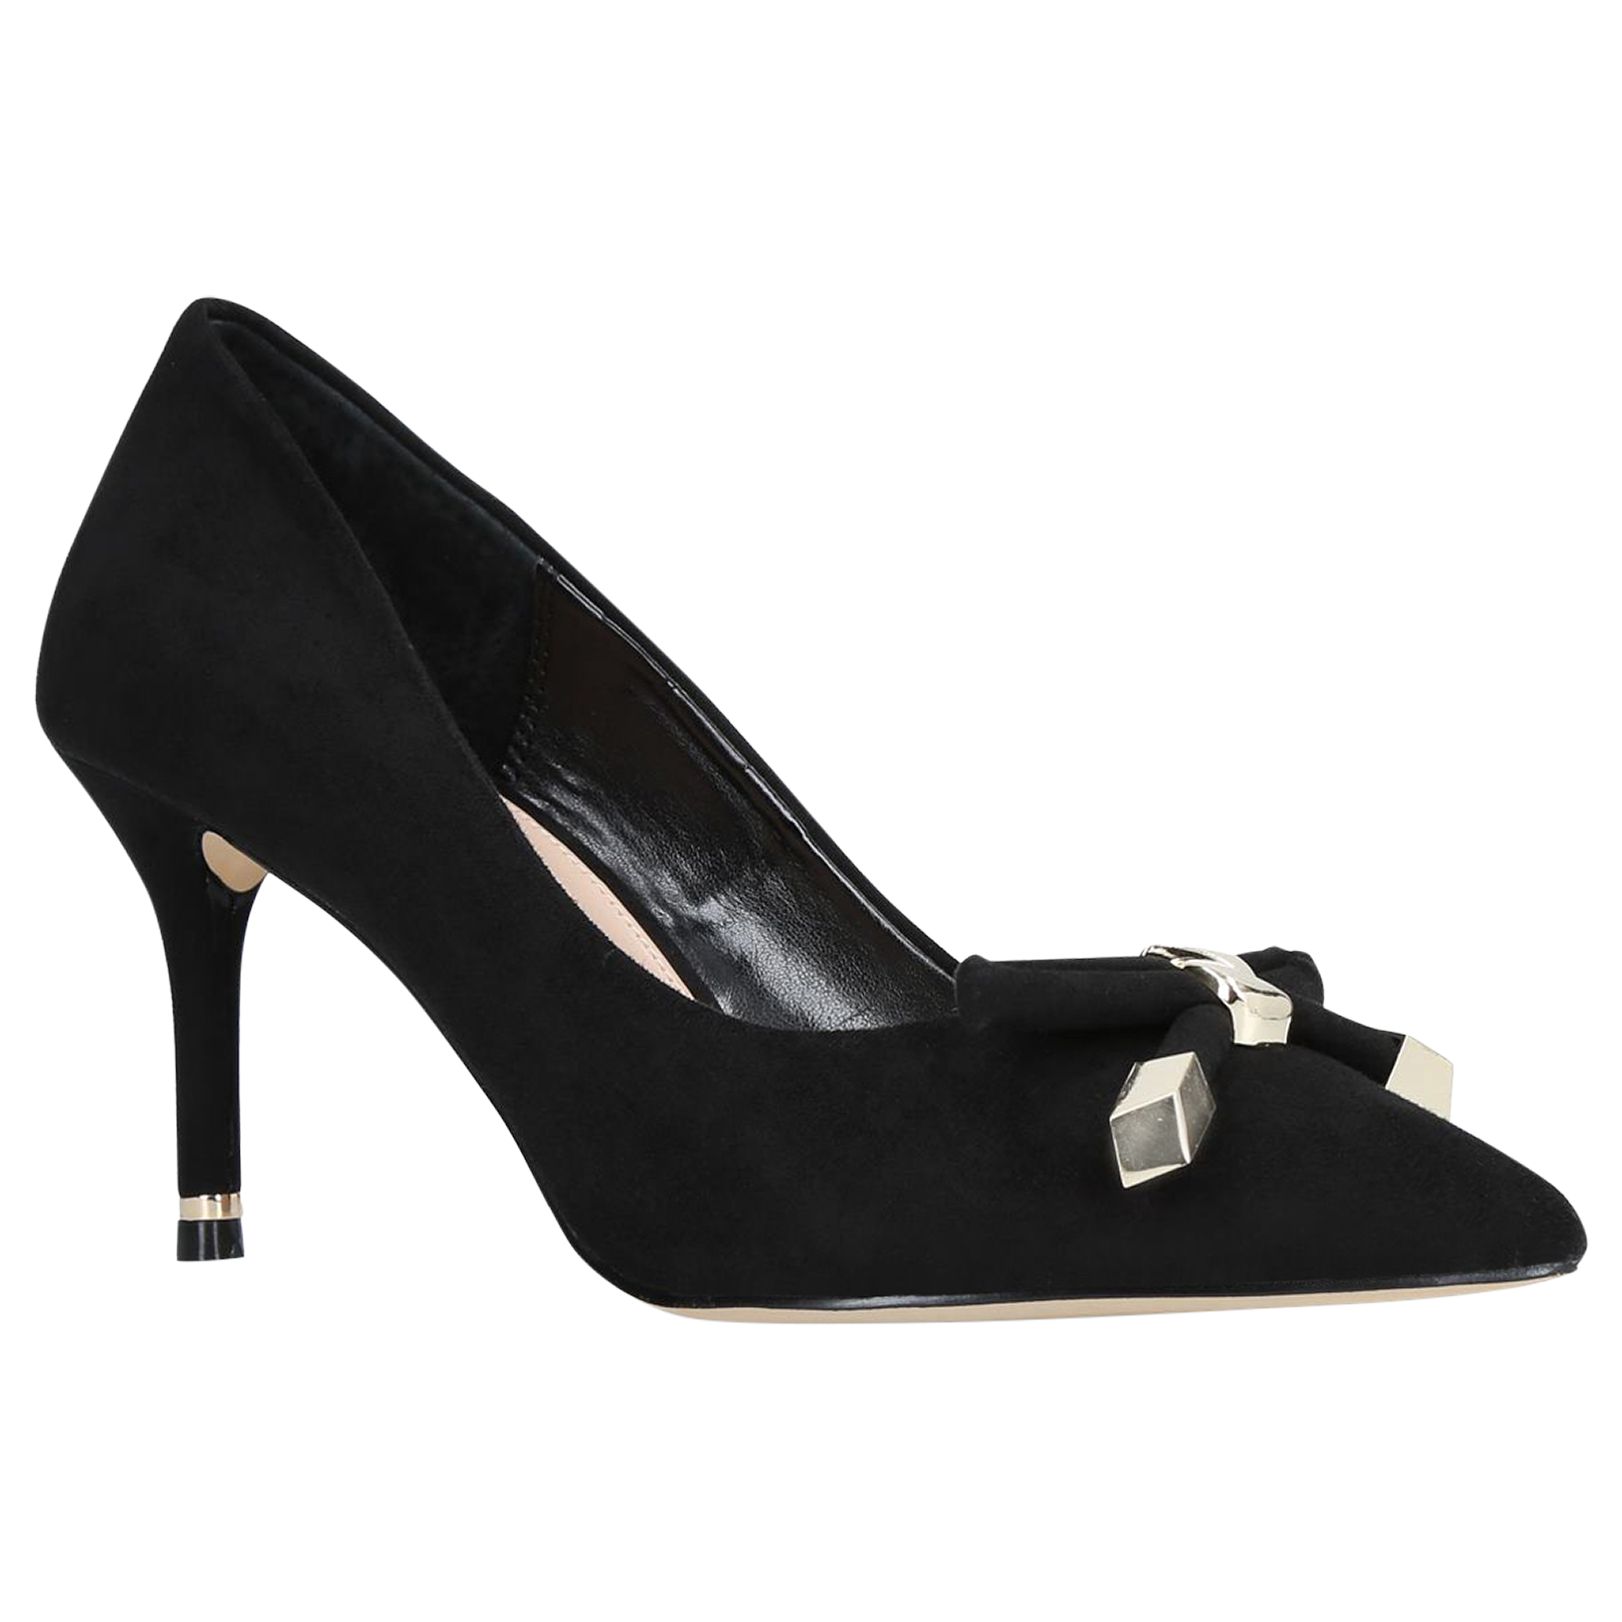 Carvela Kupid Bow Stiletto Heel Court Shoes, Black, 5